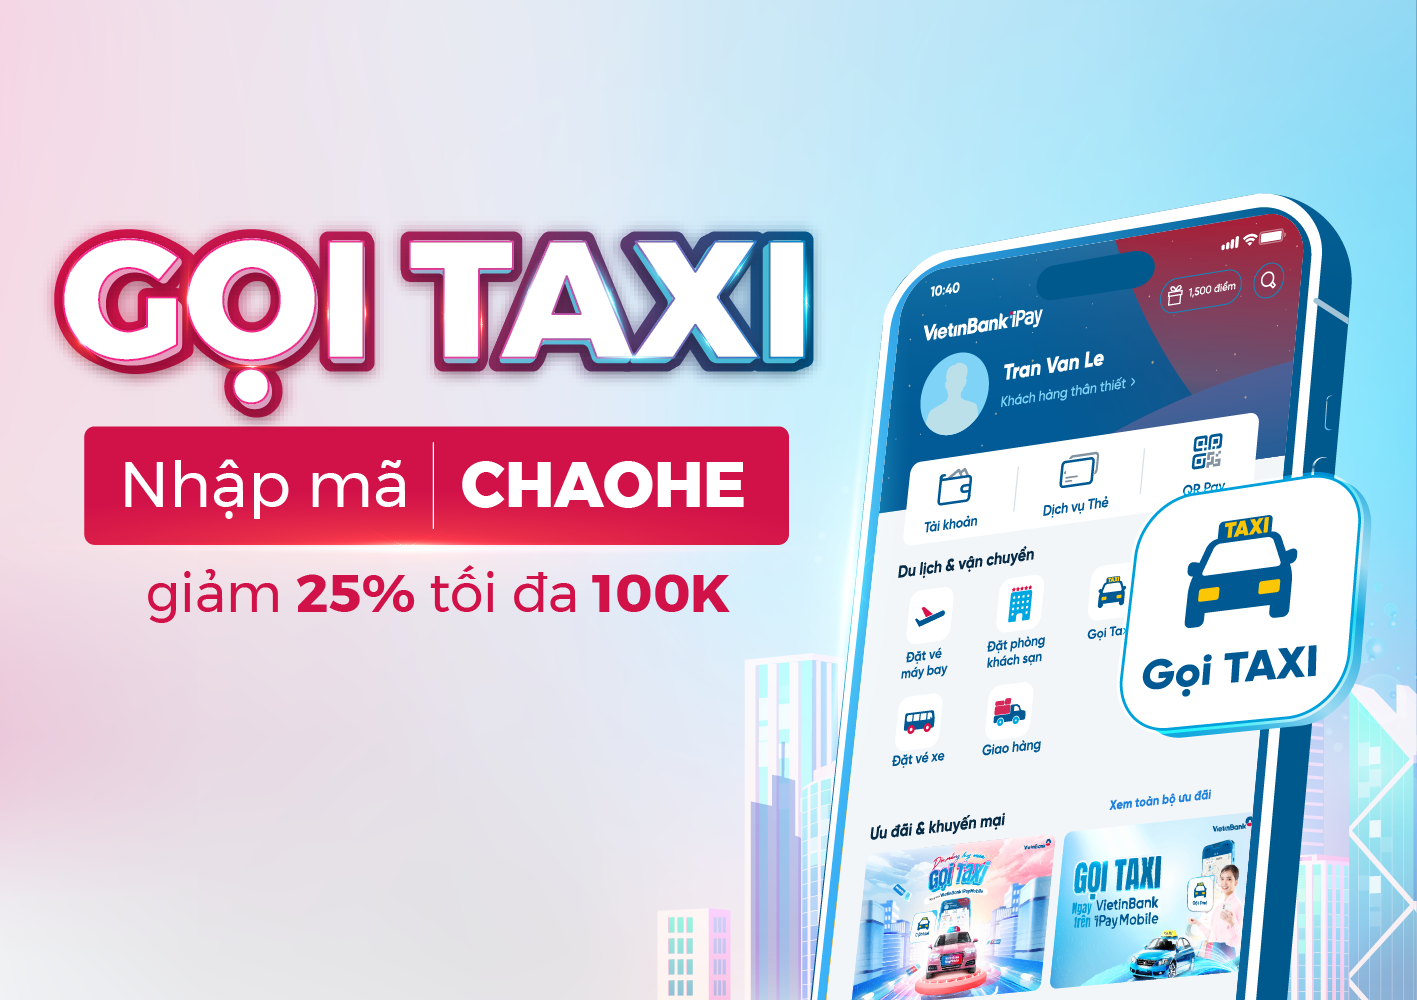 Tặng ngay 100.000 đồng khi gọi taxi trên VietinBank iPay Mobile